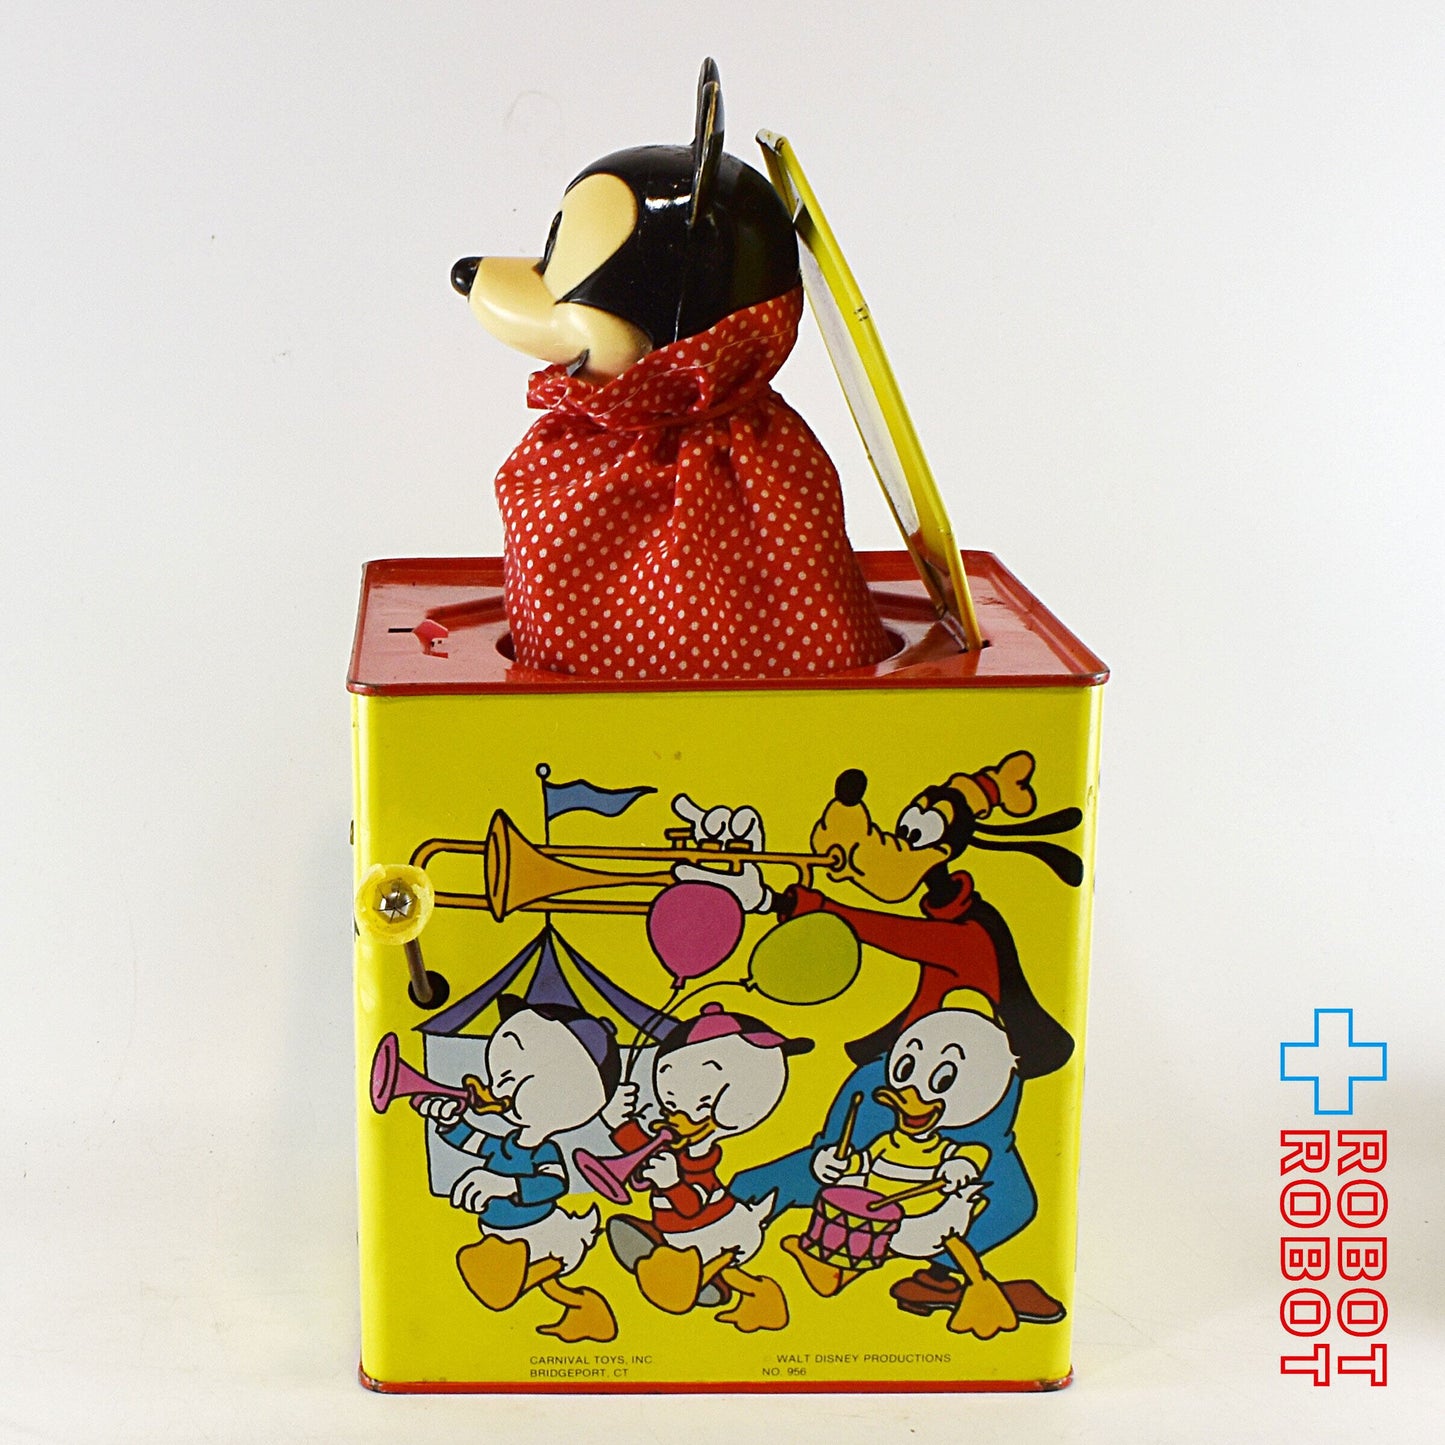 ディズニー ミッキーマウス びっくり箱 ジャックインザボックス カーニバル社